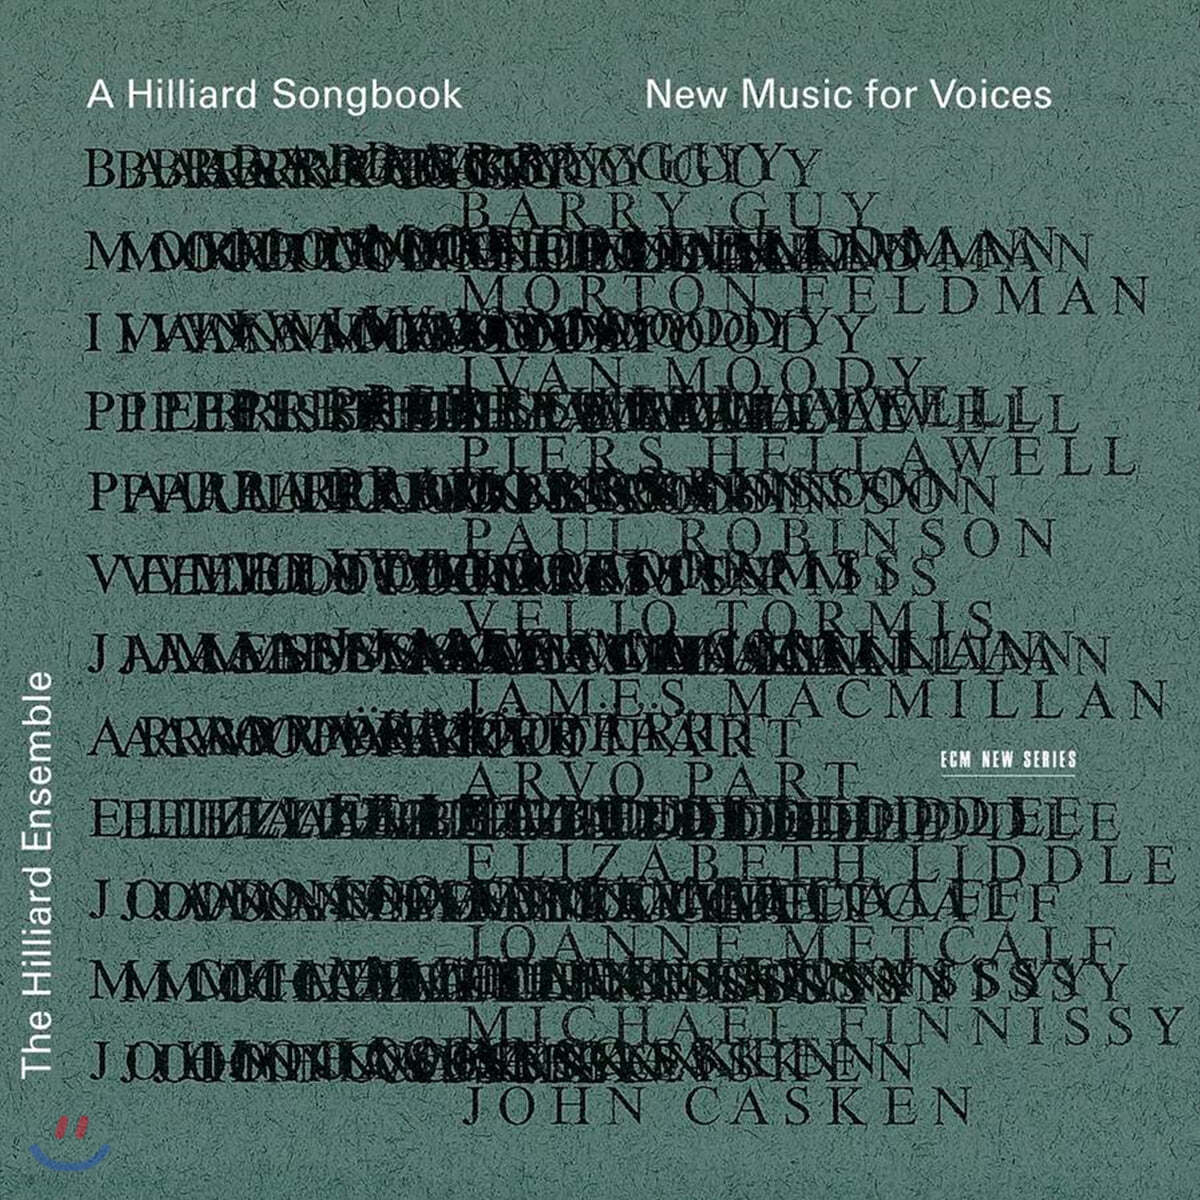 Hilliard Ensemble 힐리아드 송북 - 보컬을 위한 새로운 음악 (A Hilliard Songbook - New Music for Voices)